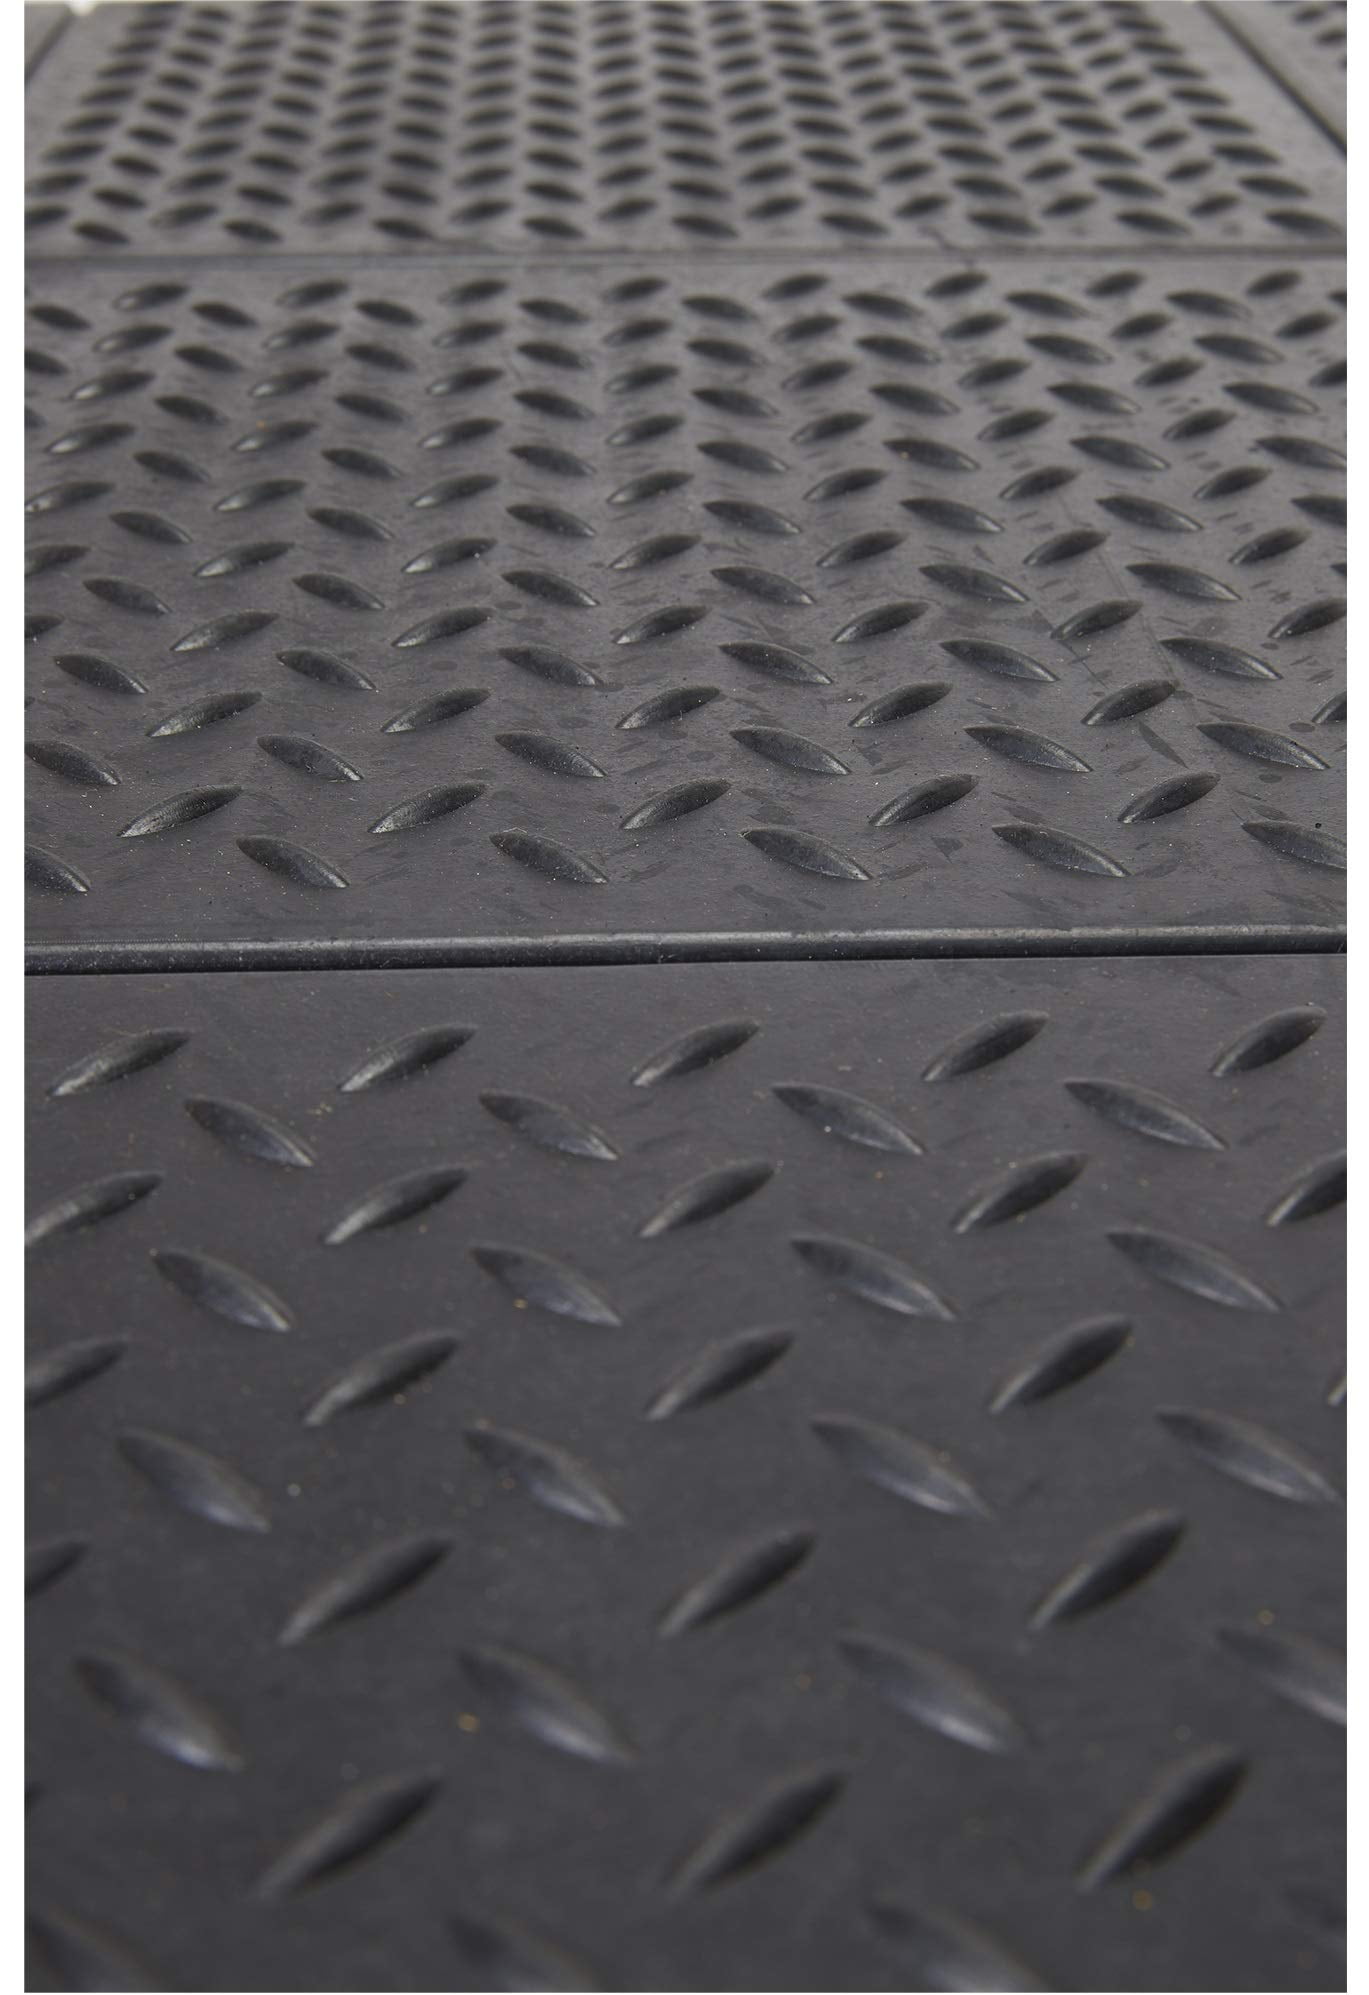 New Envelor Indoor/Outdoor Rubber Anti Fatigue Floor Mat 36 X 60 Inch  Non-Slip Bar Drain - Door Mats - Hudsonville, Michigan, Facebook  Marketplace